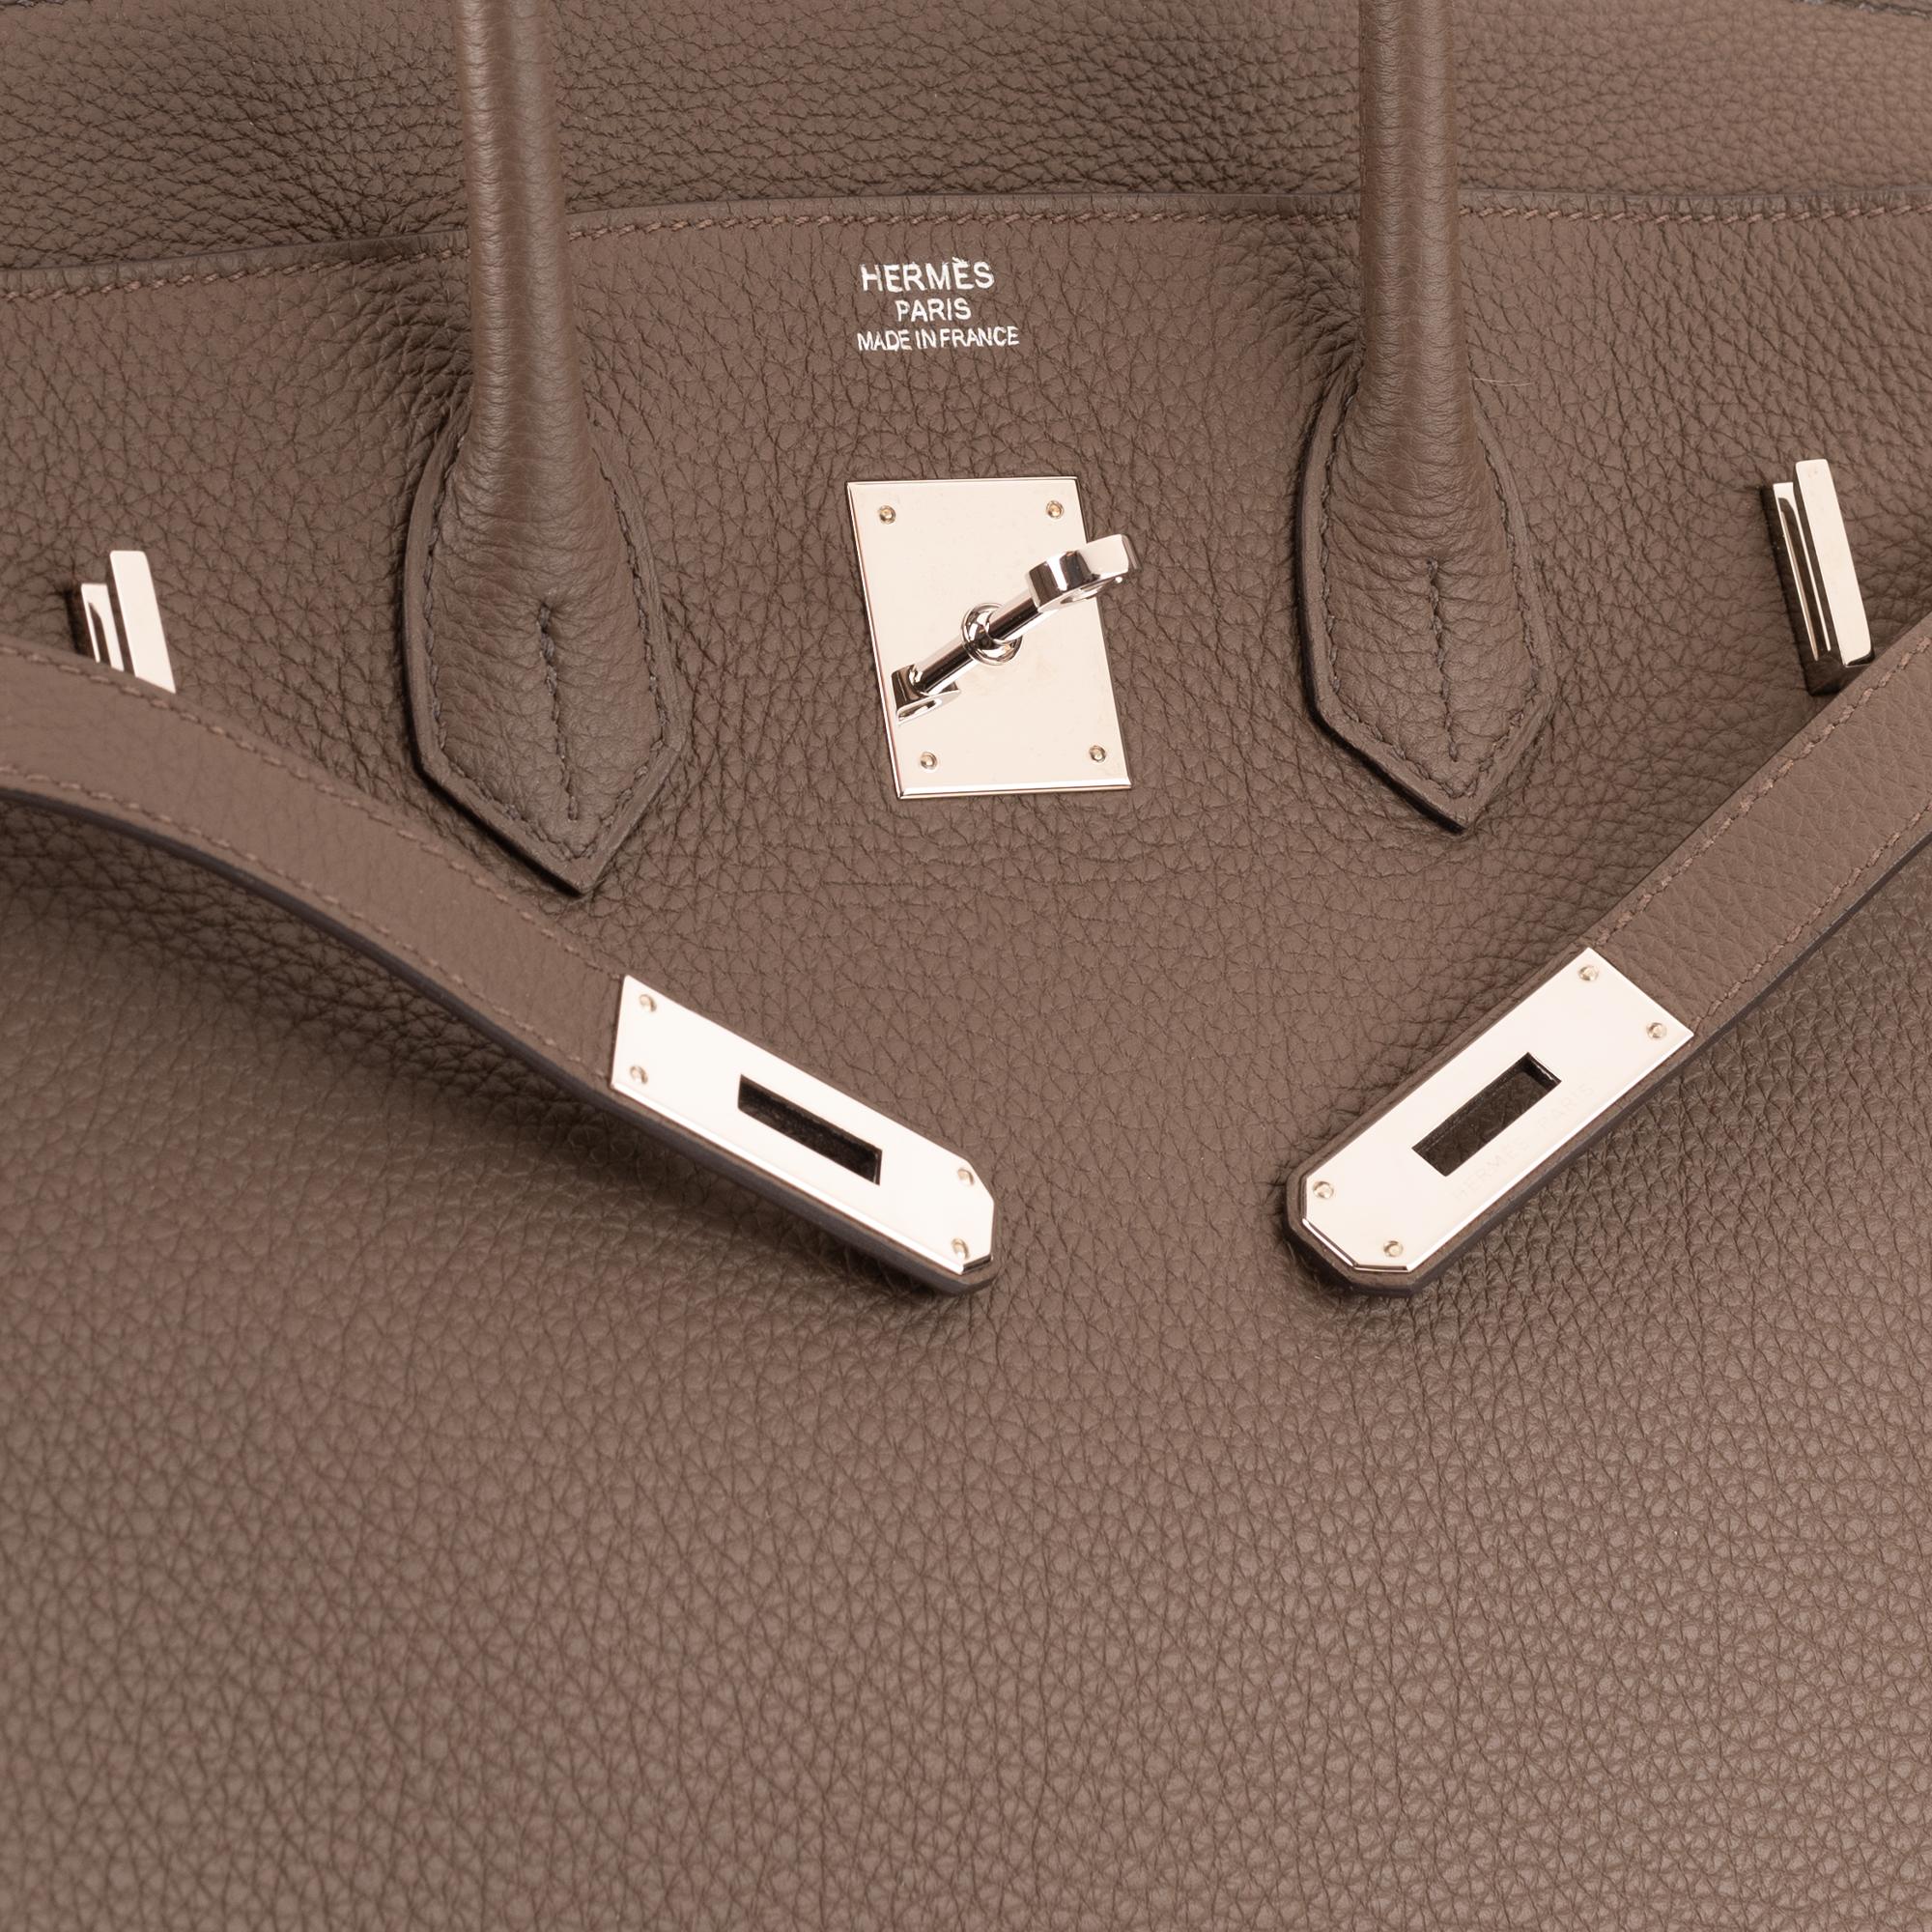 Hermès Birkin 35 Handtasche aus Togo-Leder in Taupe-Farbe und silberner Hardware! Damen